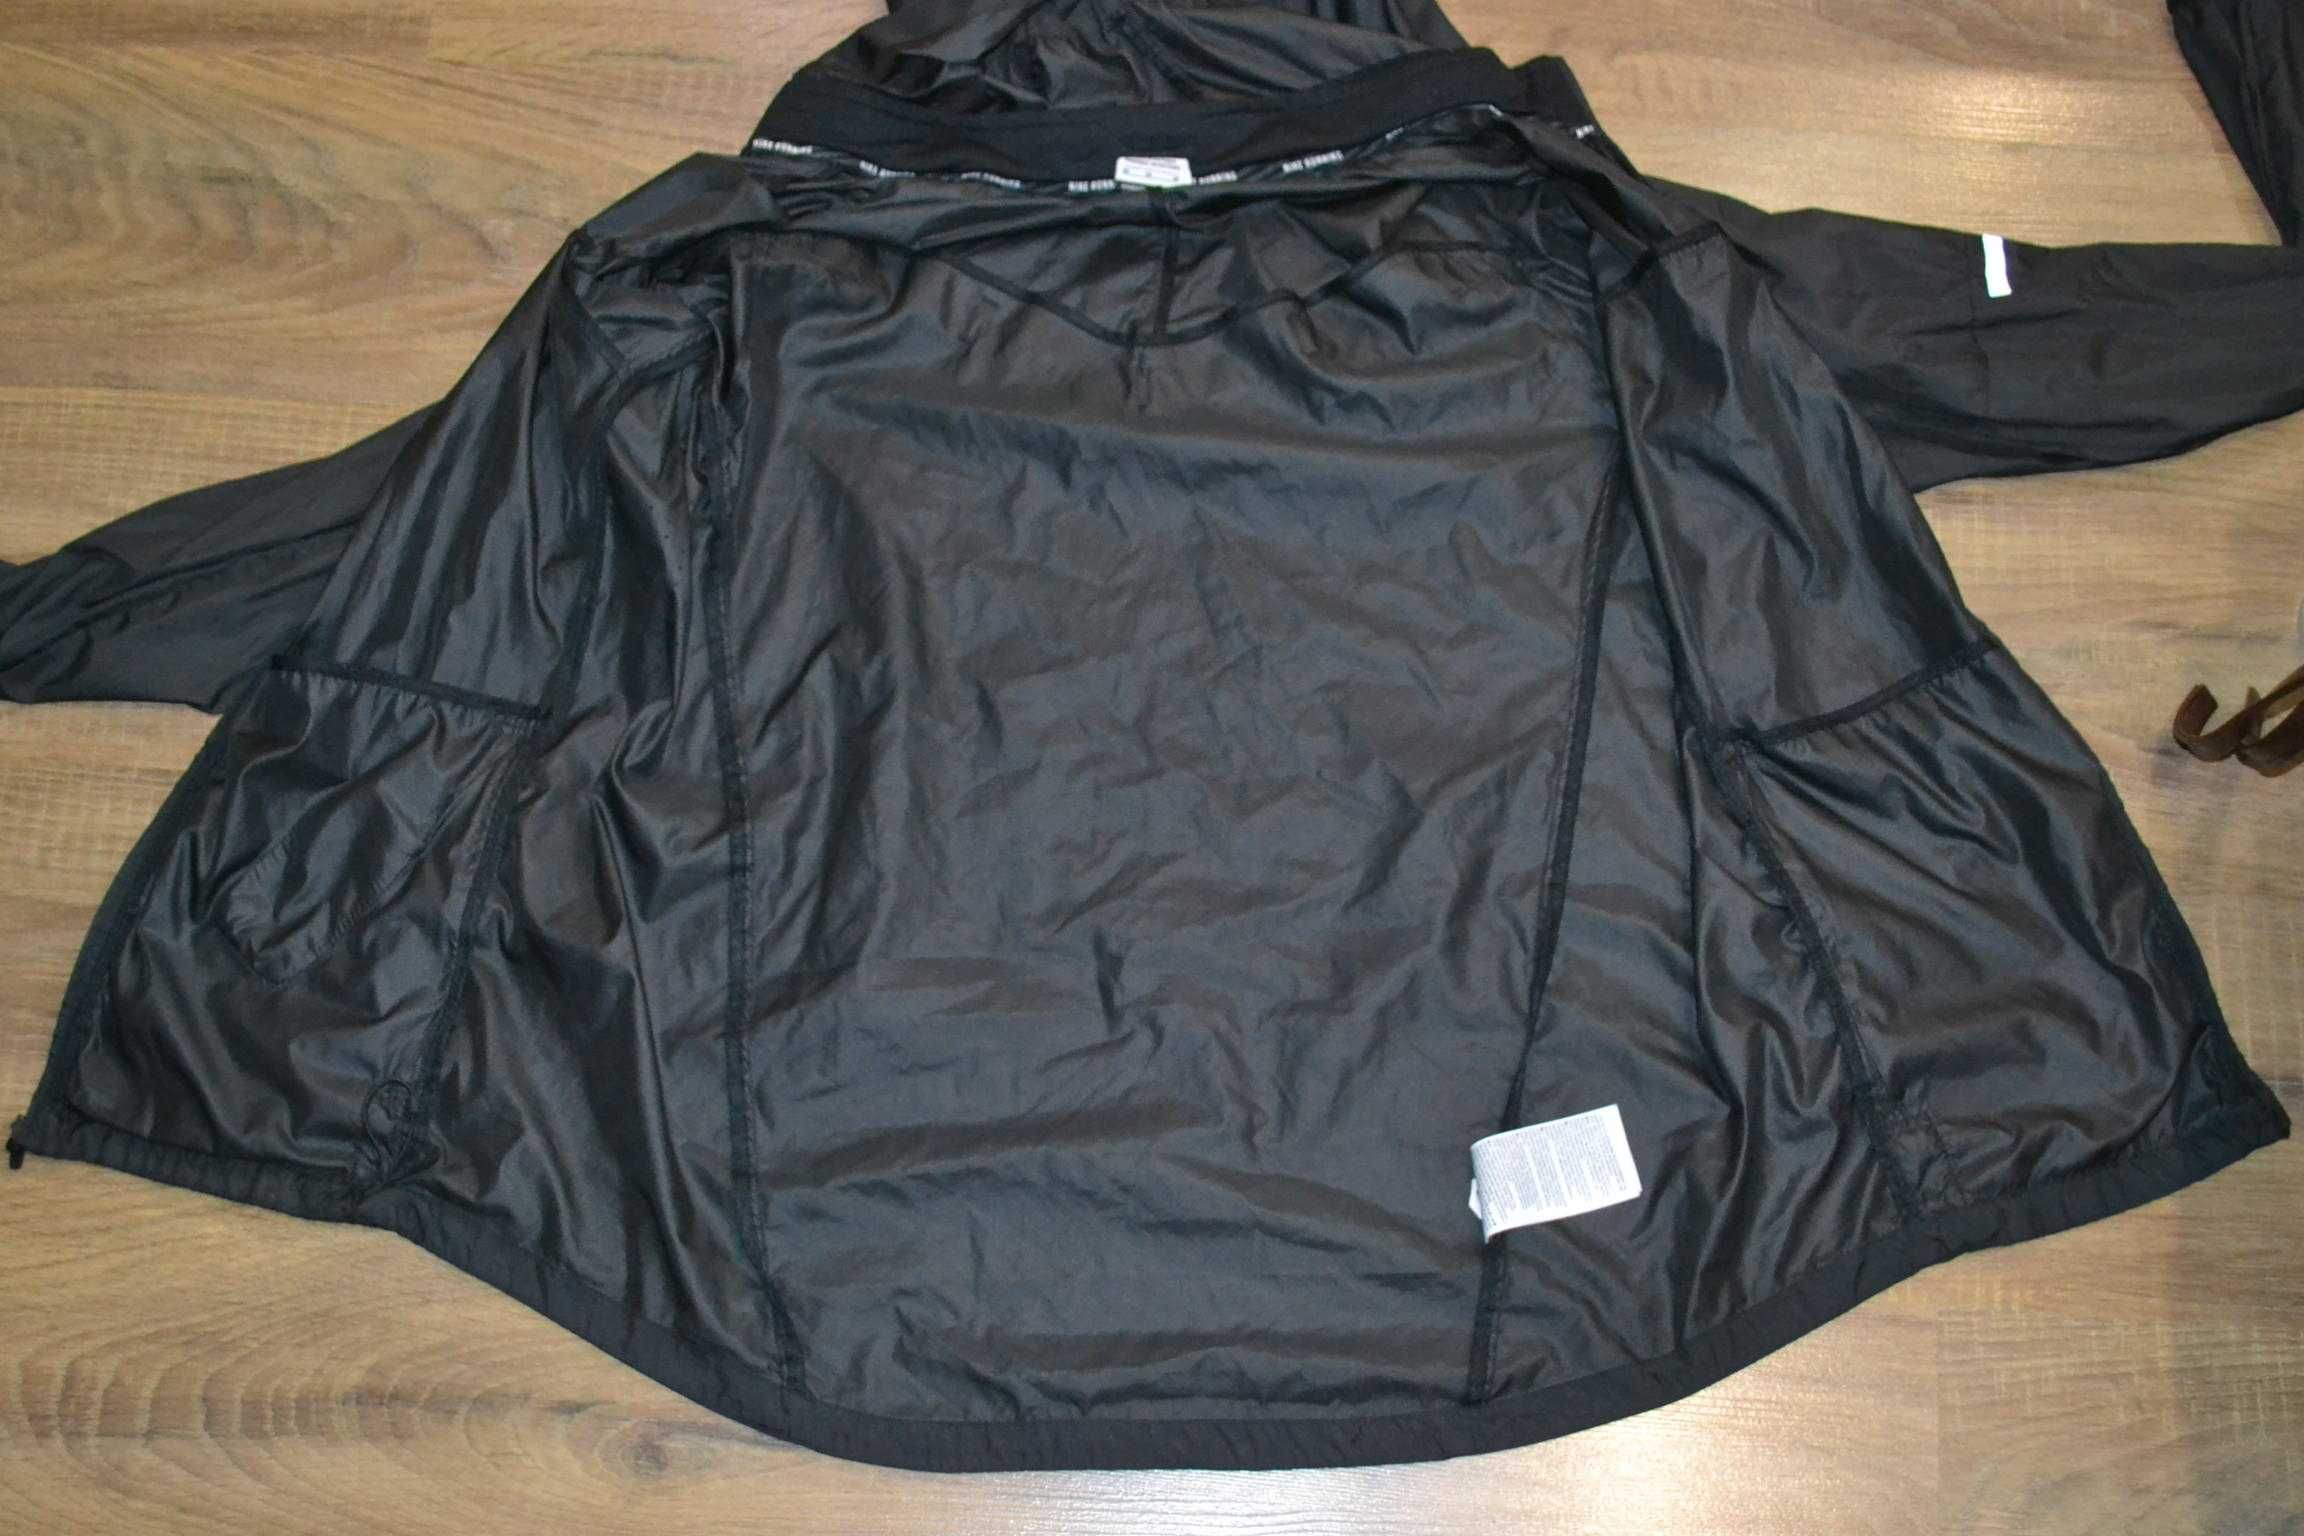 куртка ветровка Nike vapor jacket M мужская оригинал спортивная